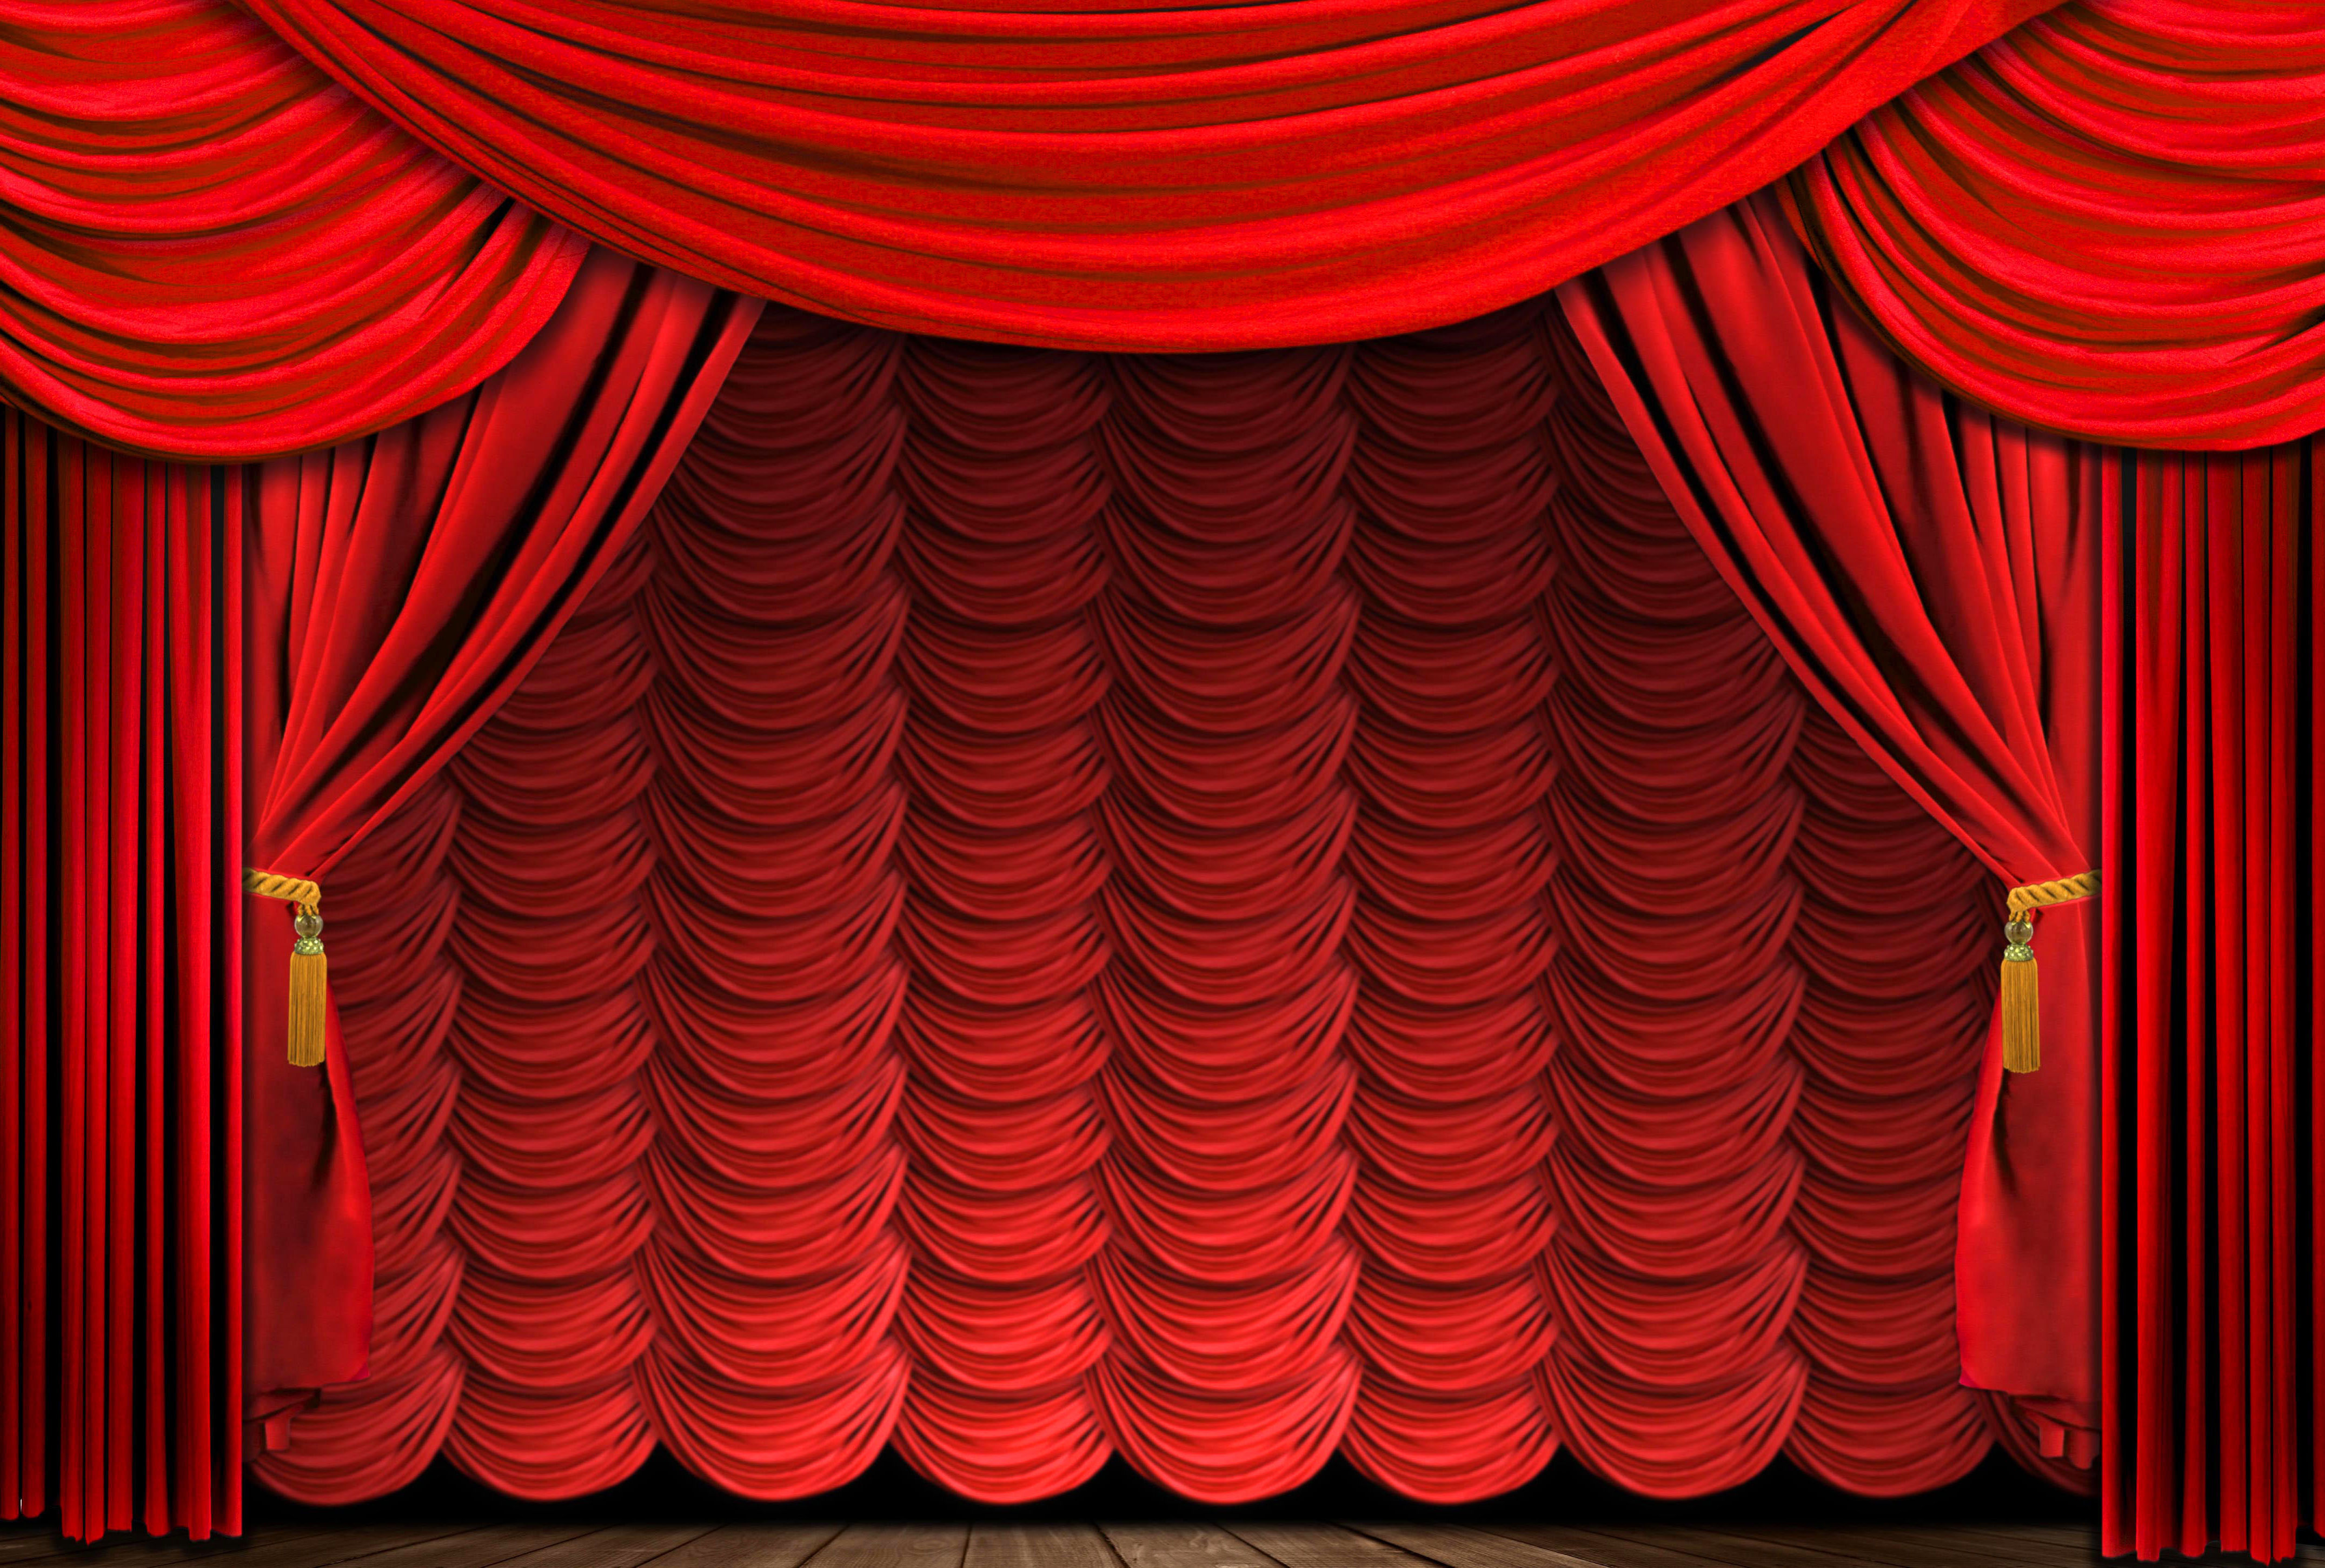 Занавес поднялся и как только. Театральный занавес. Занавес в театре. Красные шторы. Театральные шторы.